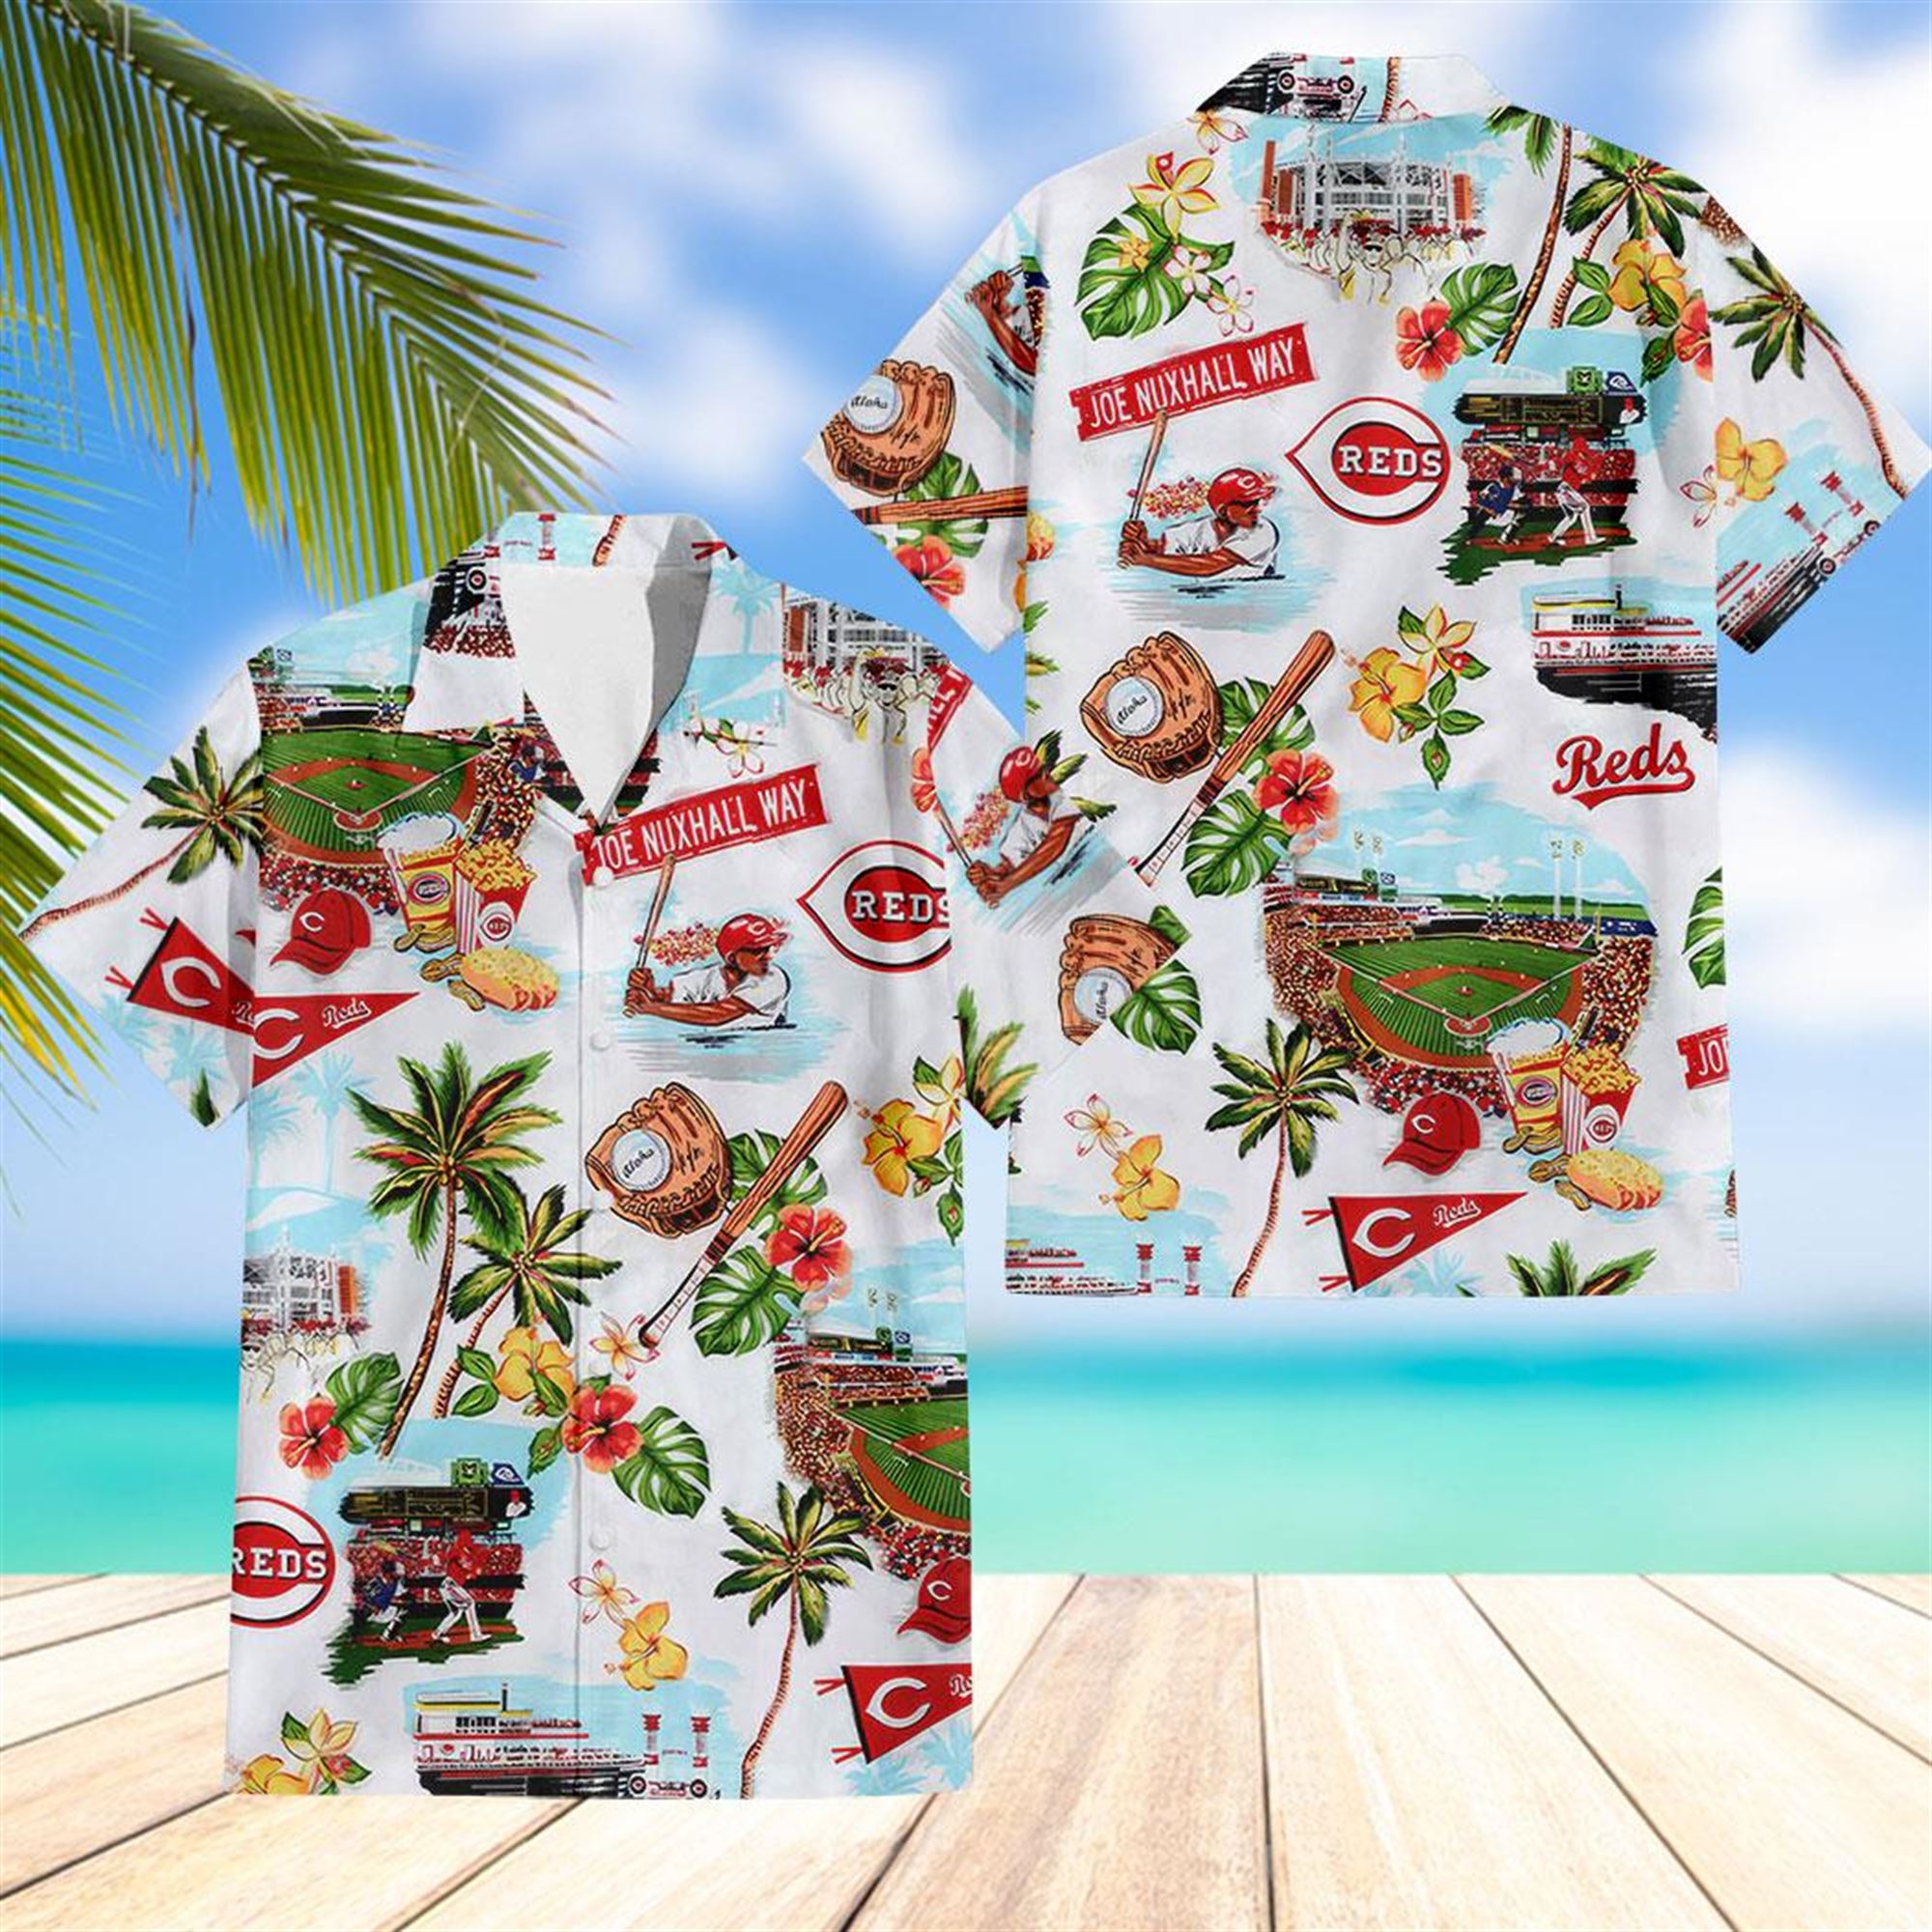 Arizona Diamondbacks Hawaiian Shirt 2023 Giveaway - Rockatee